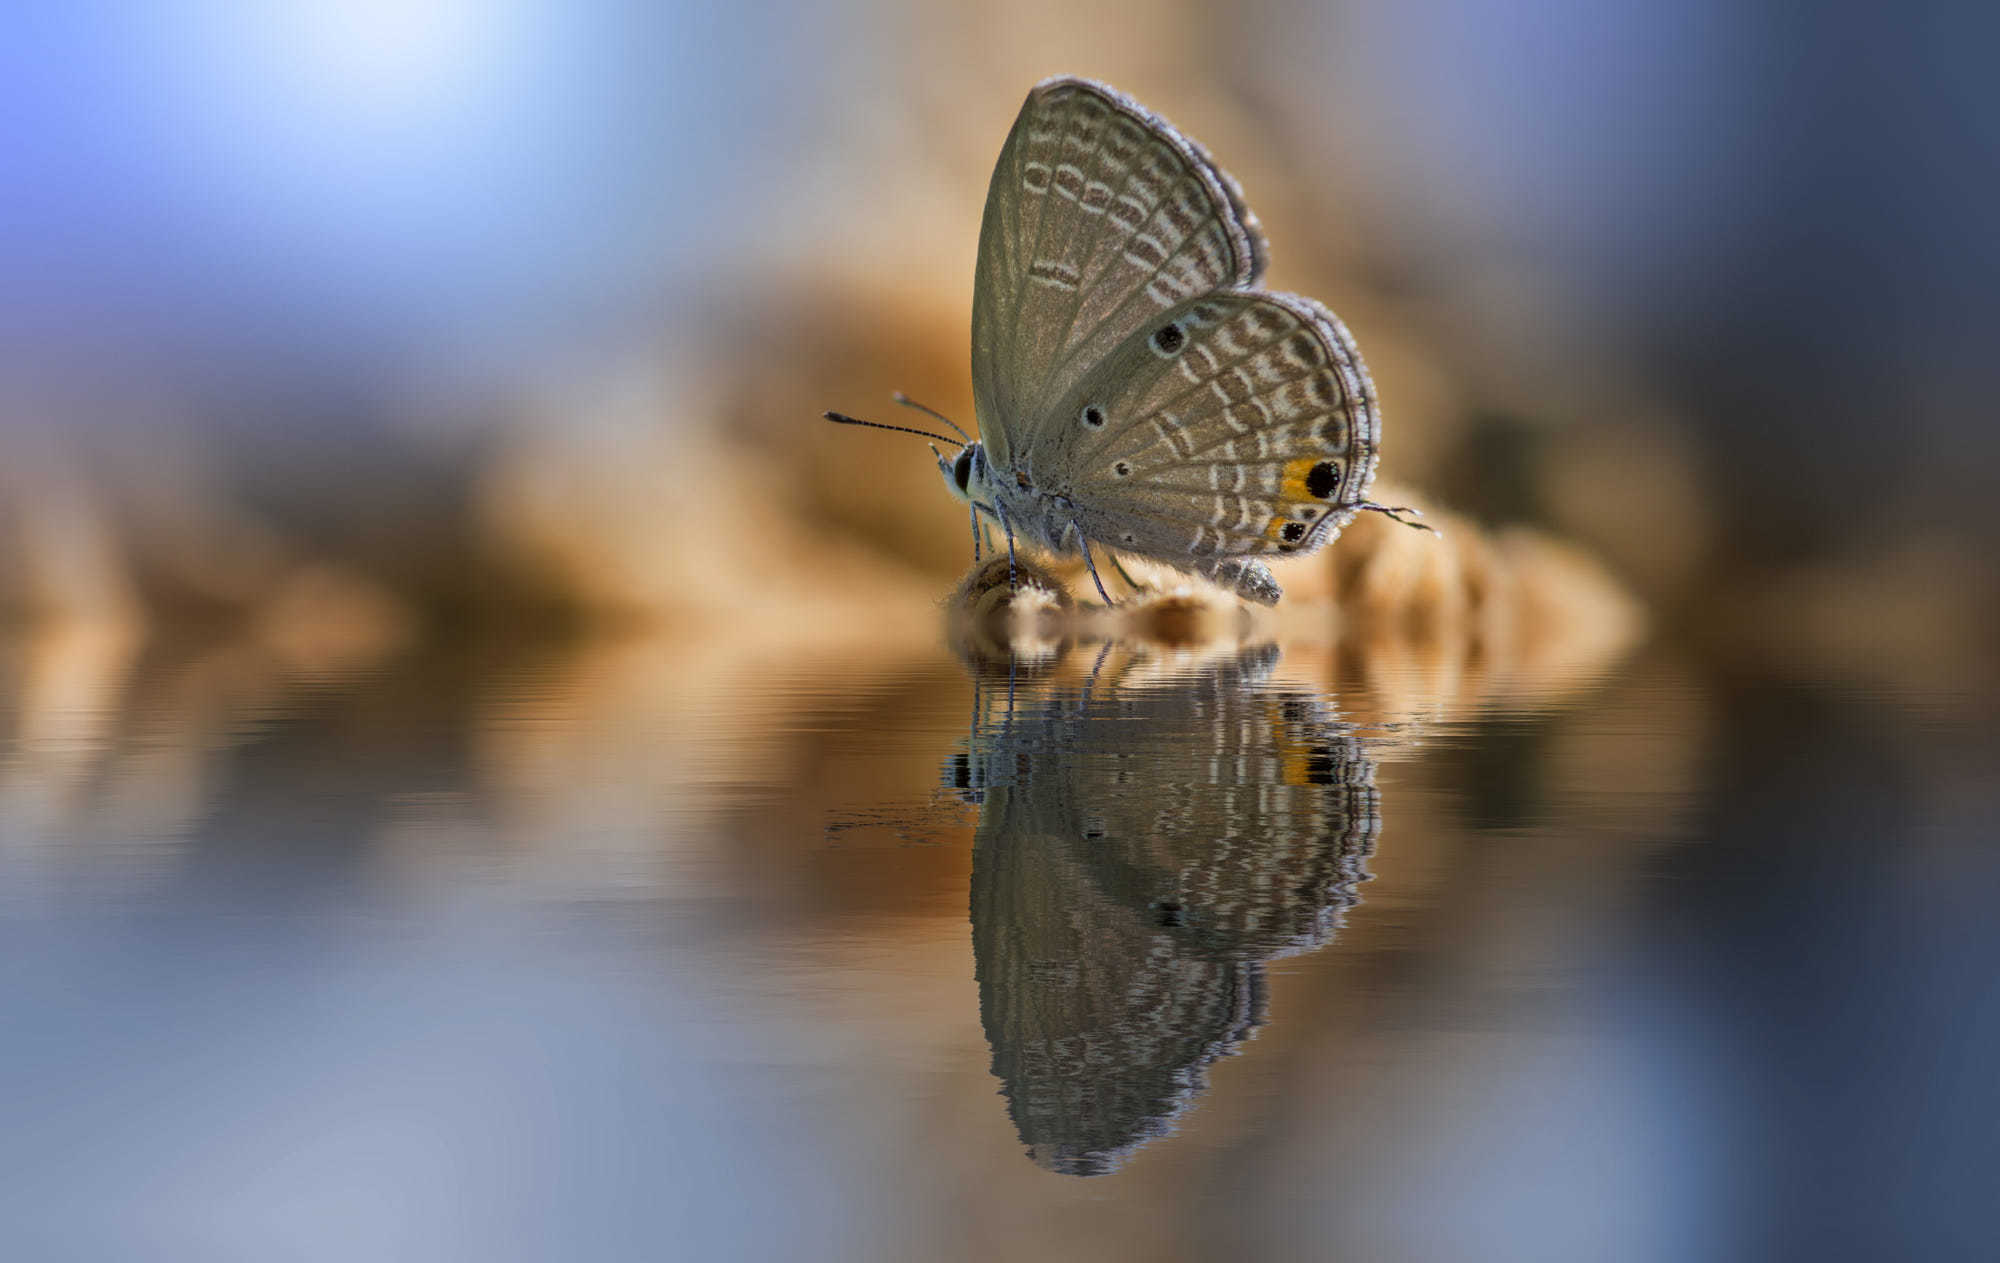 Картинка: Бабочка, вода, сидит, отражение, размытость